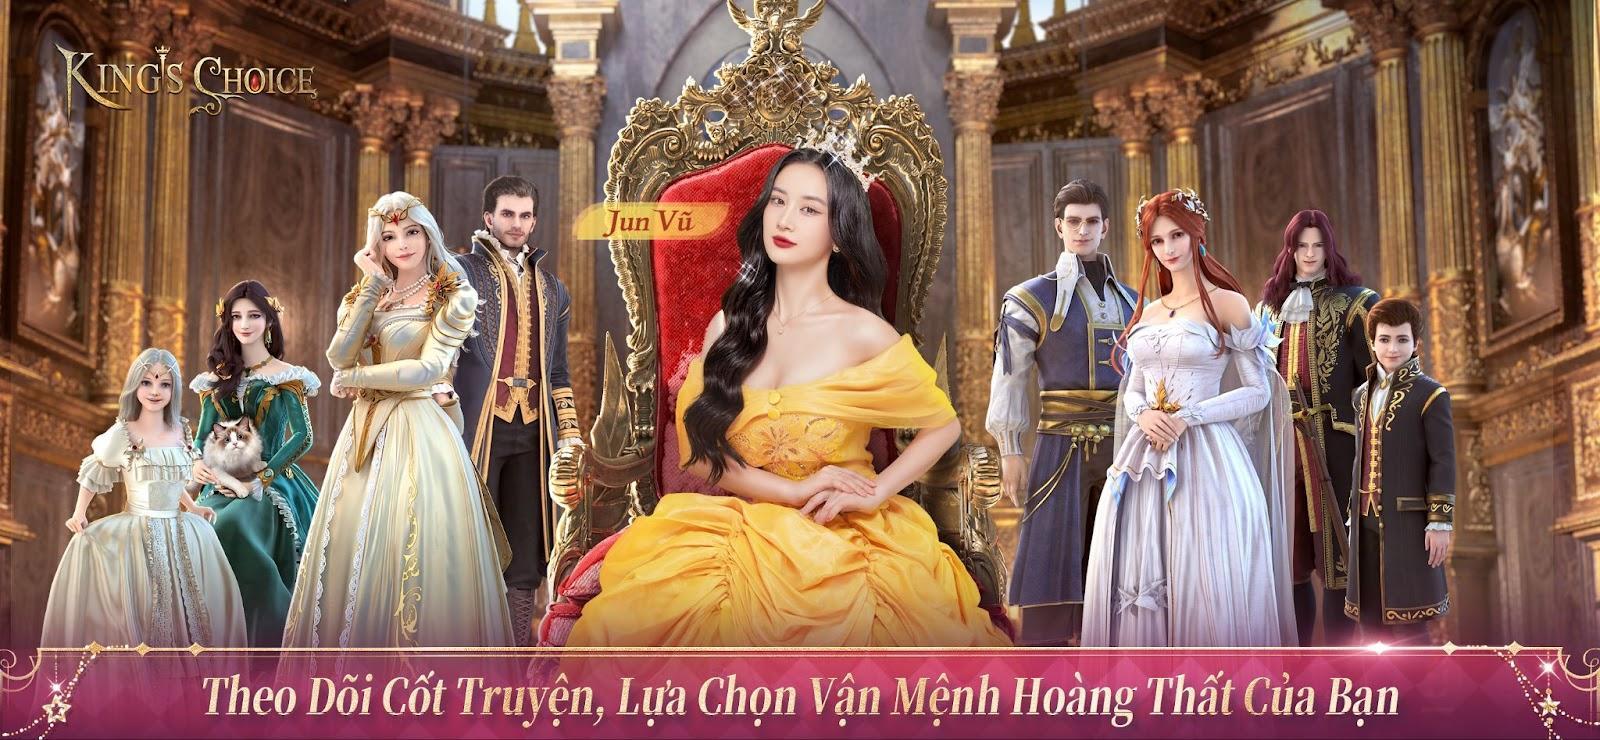 Kings Choice - Game nhập vai mô phỏng cuộc sống hoàng gia chính thức ra mắt game thủ Việt - Ảnh 1.